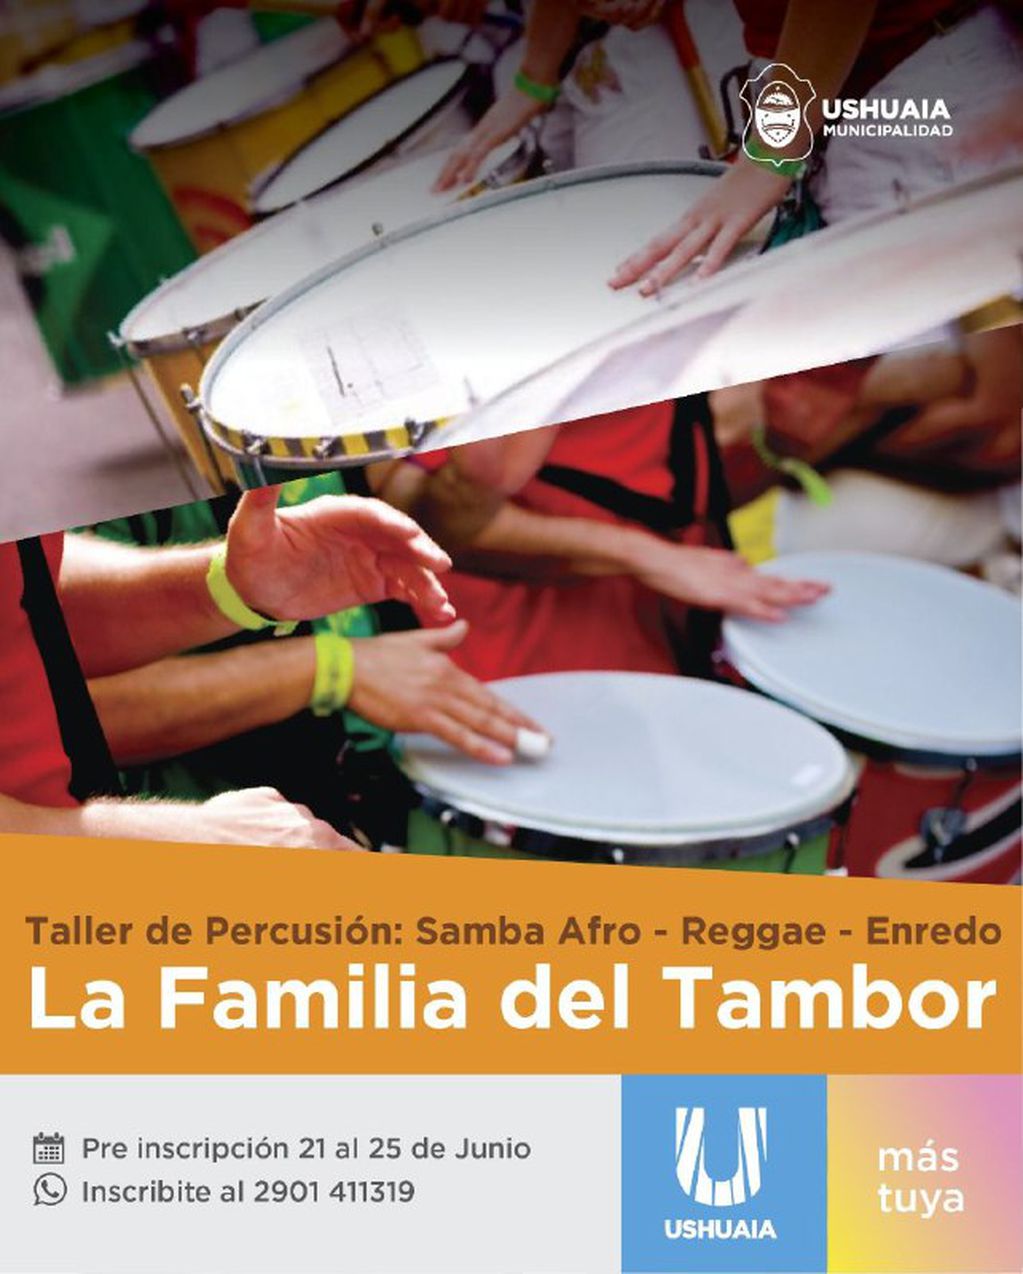 Comenzó la preinscripción para el Taller de Percusión “La familia del Tambor”